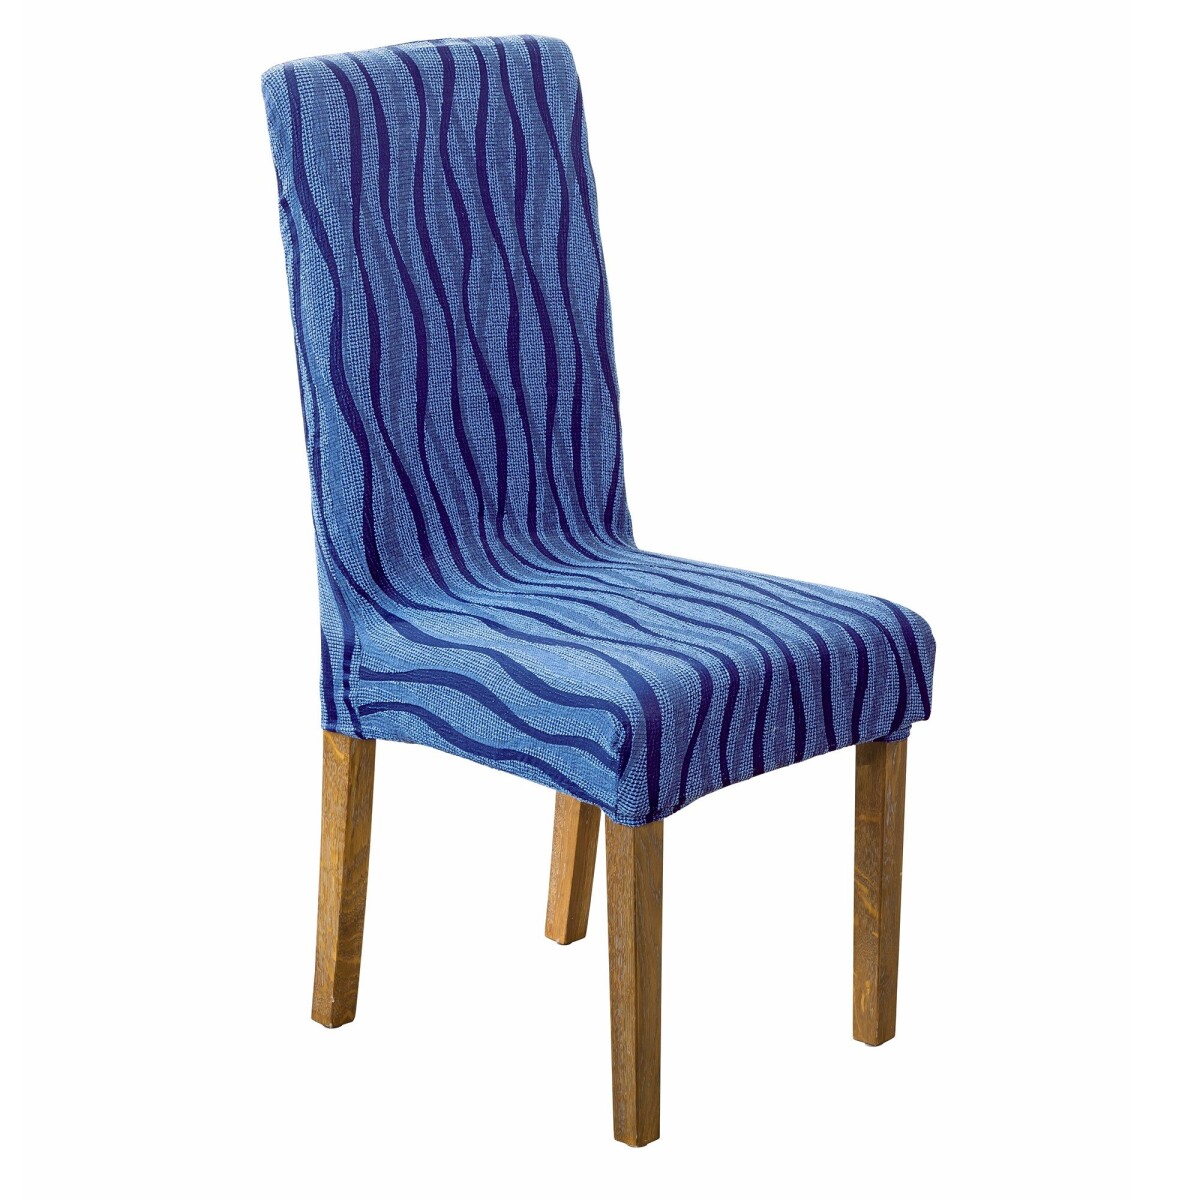 Blancheporte Sada 2 pružných žakárových potahů na židle modrá 3 kusy